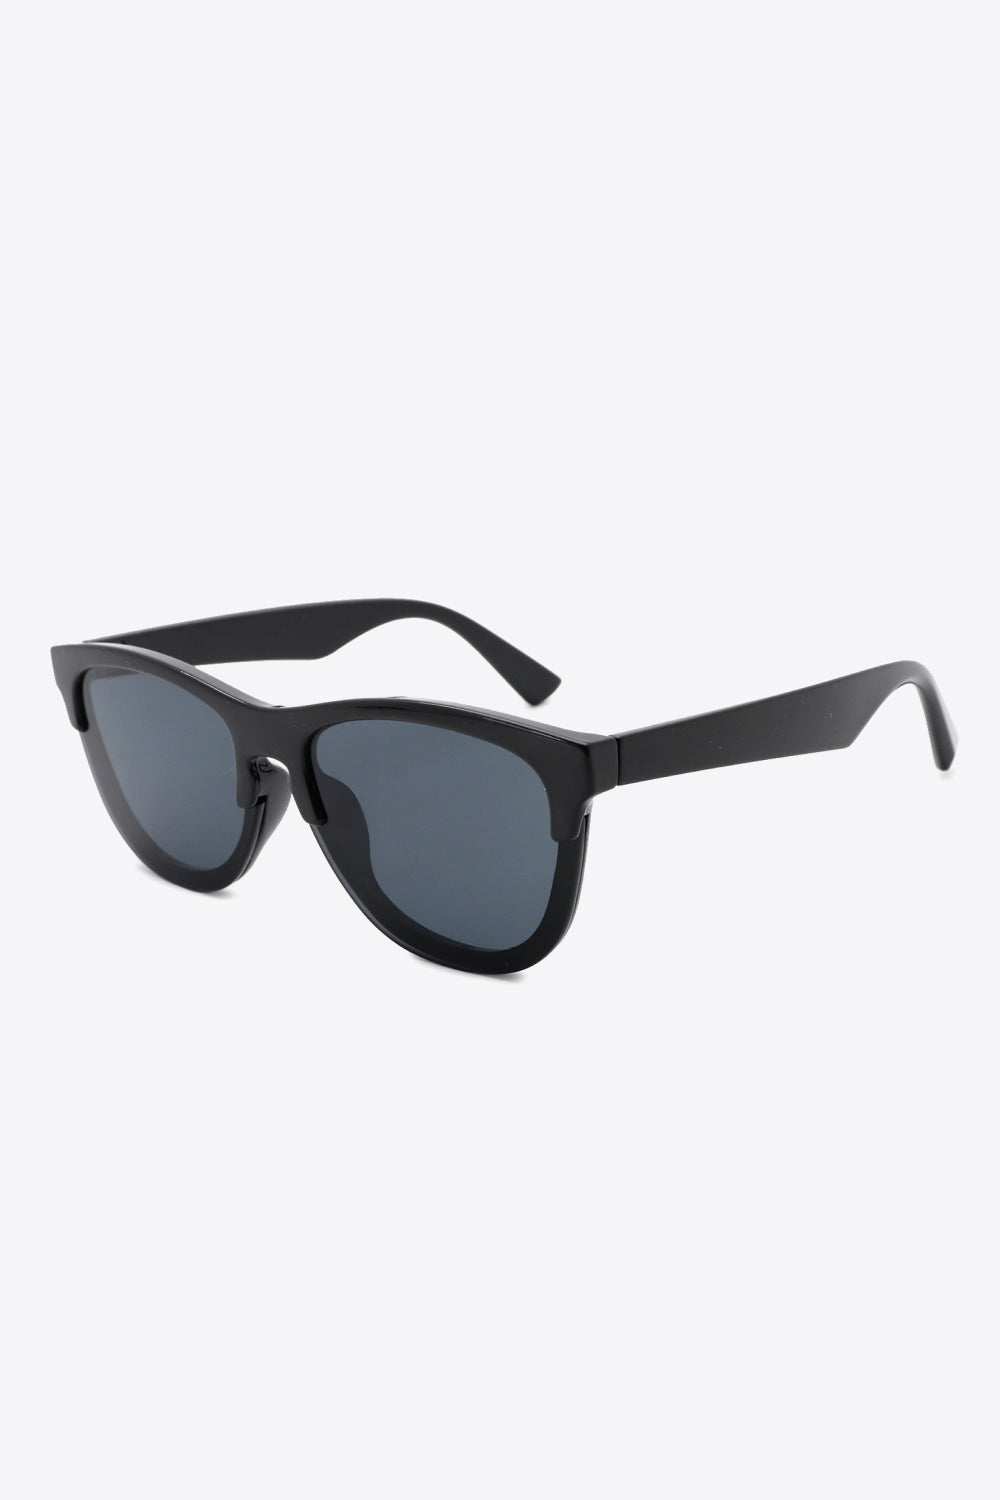 UV400 Browline Wayfarer Sunglasses - Sunglasses - FITGGINS